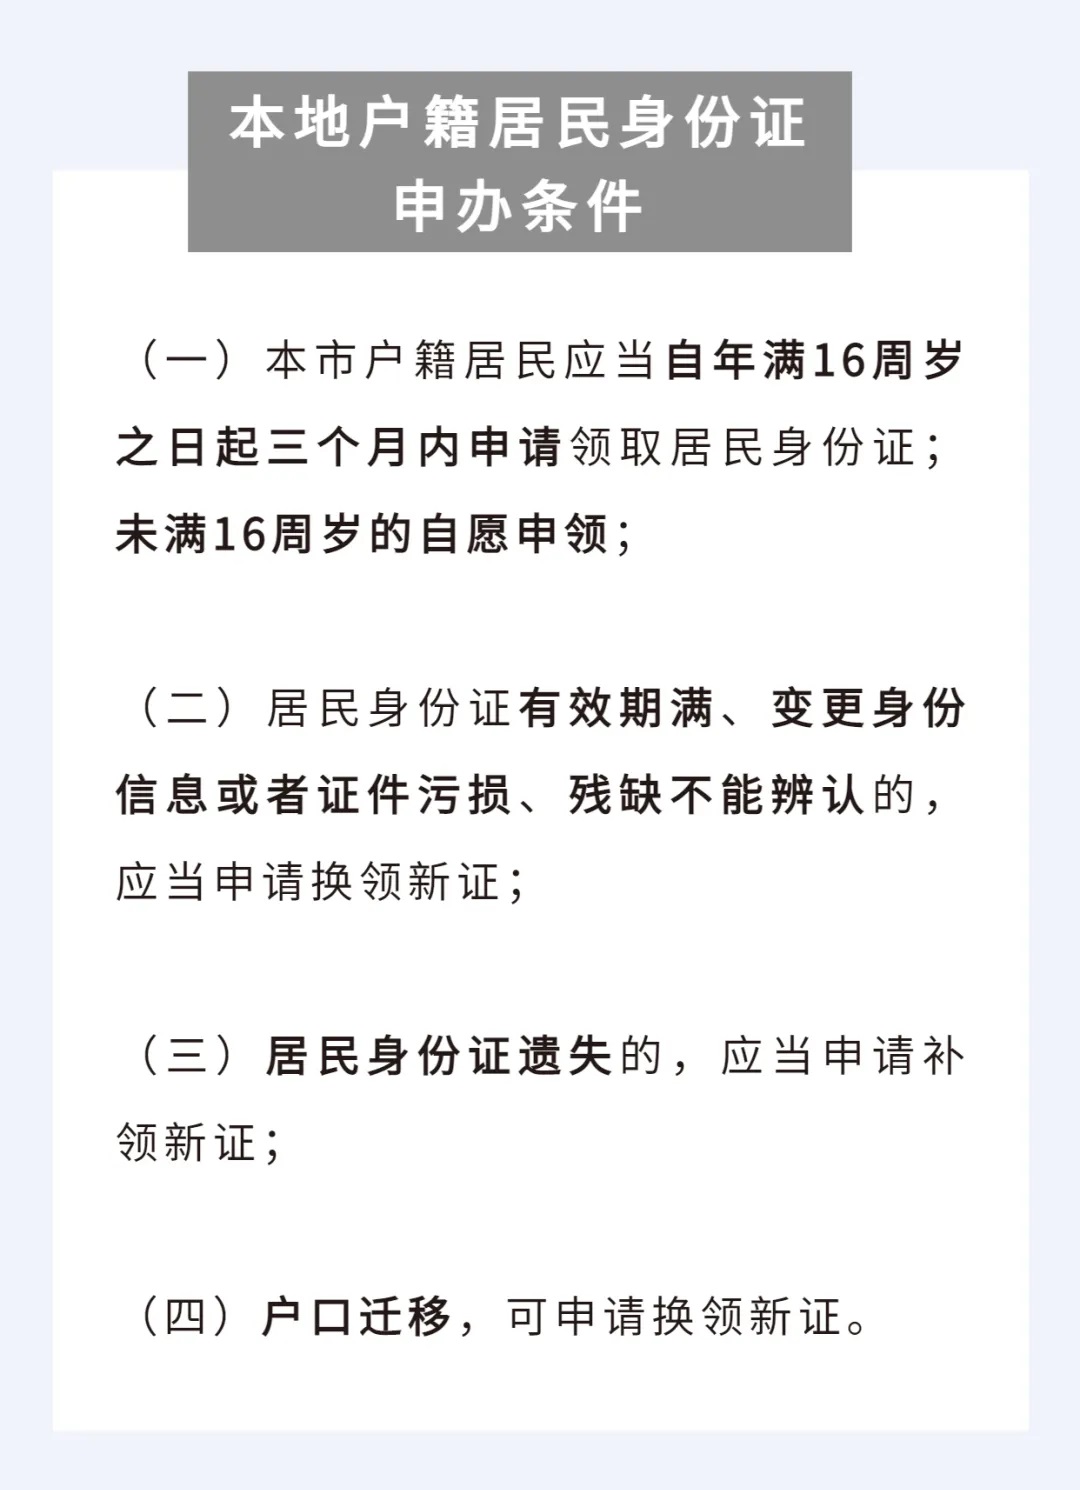 深圳居民办理身份证需要的材料和应具备条件